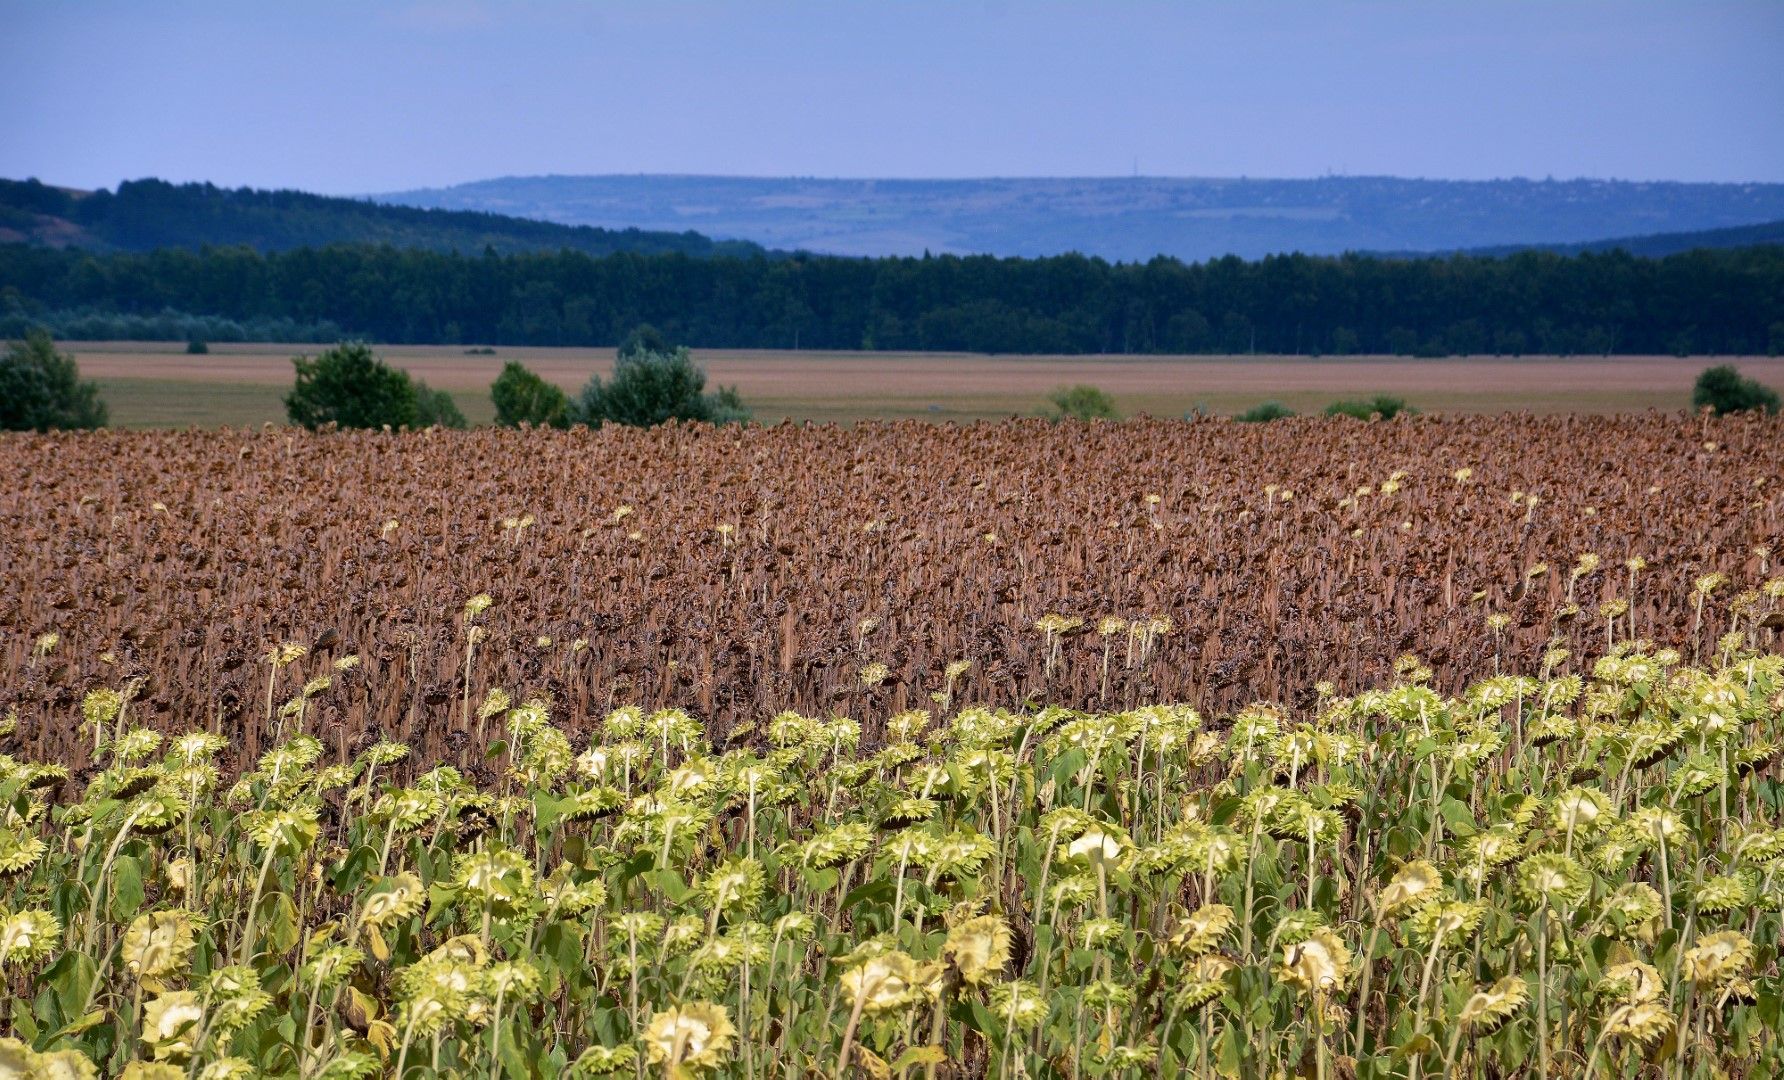  Посевите от слънчоглед и царевица във Варненско са в плачевно състояние. Според земеделци, сушата е причината да ожънат или нищо, или до около 50 килограма зърно на декар вместо 300-400 килограма както в добрите години, 13 август